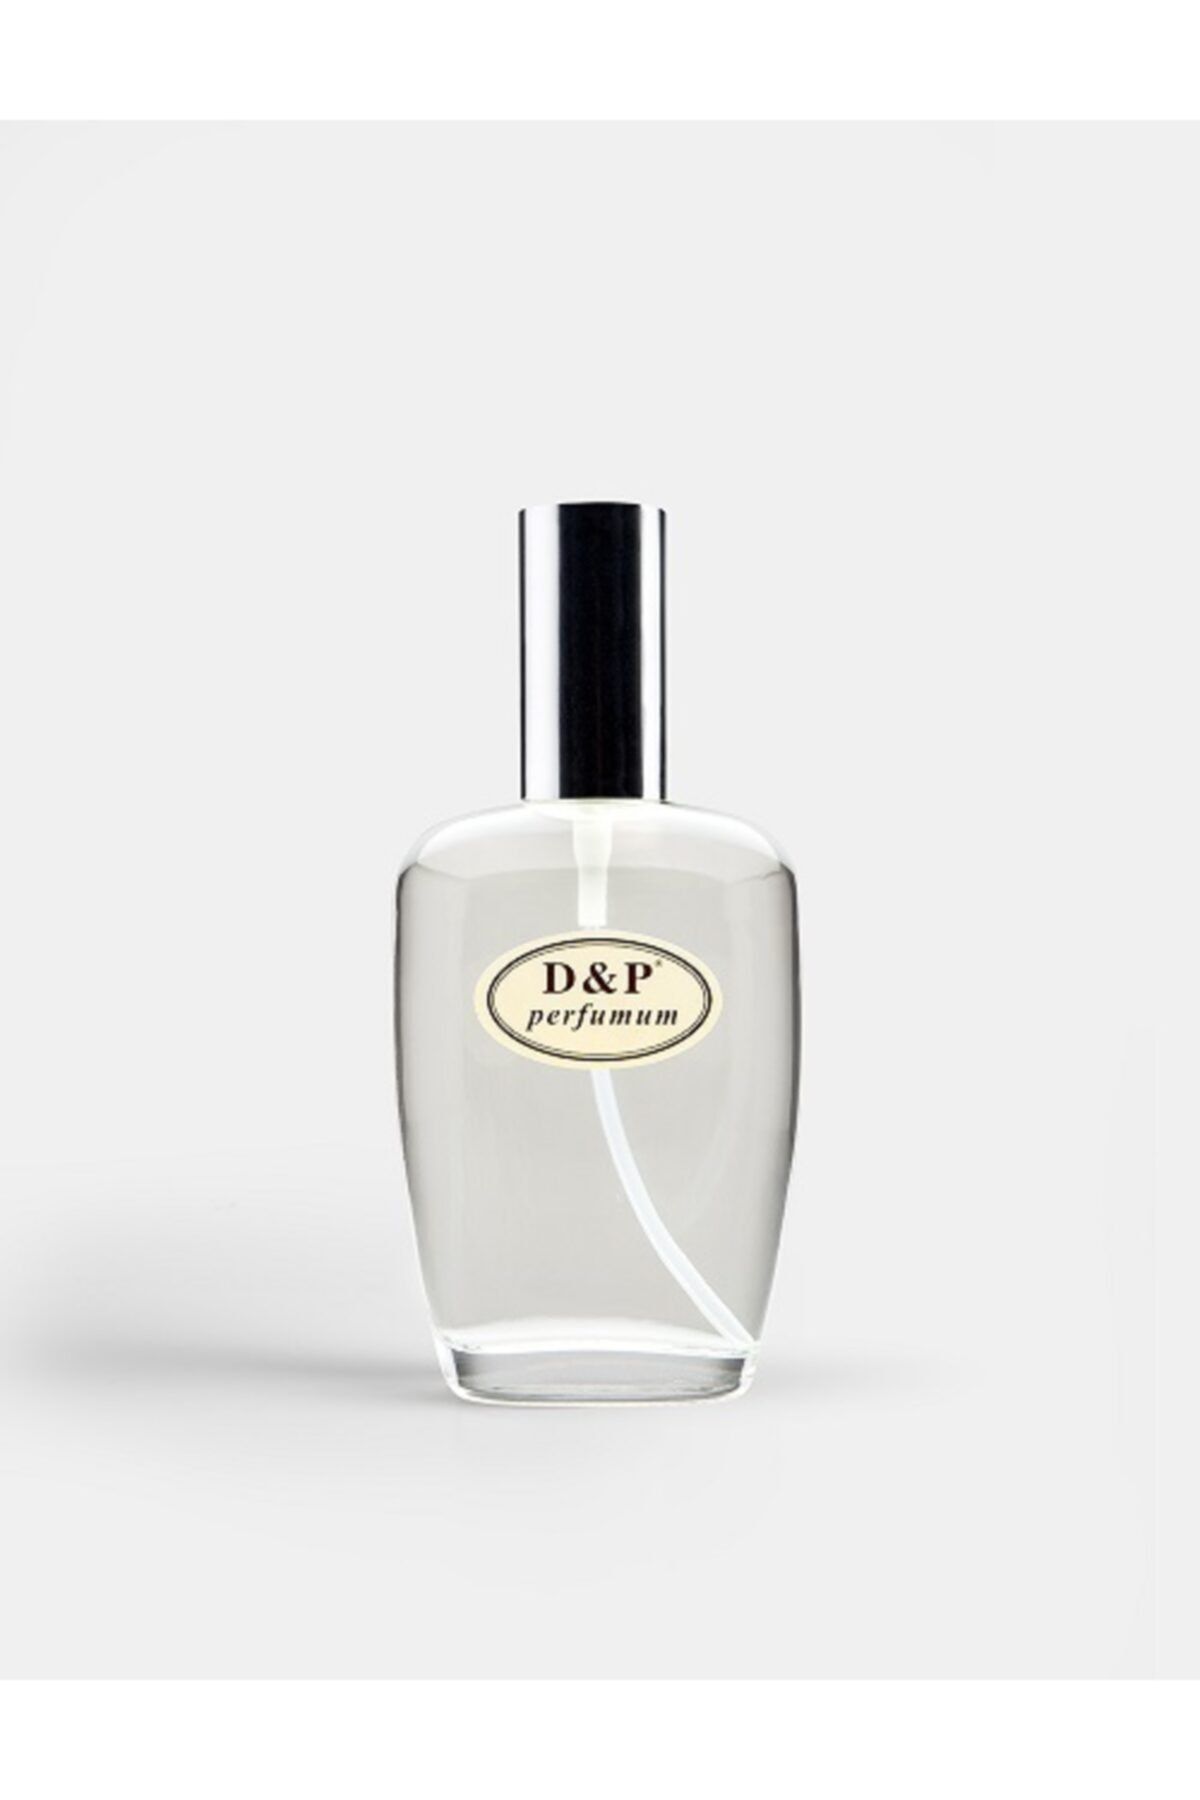 D&P Perfumum A2 Kadın Parfüm 100 ml